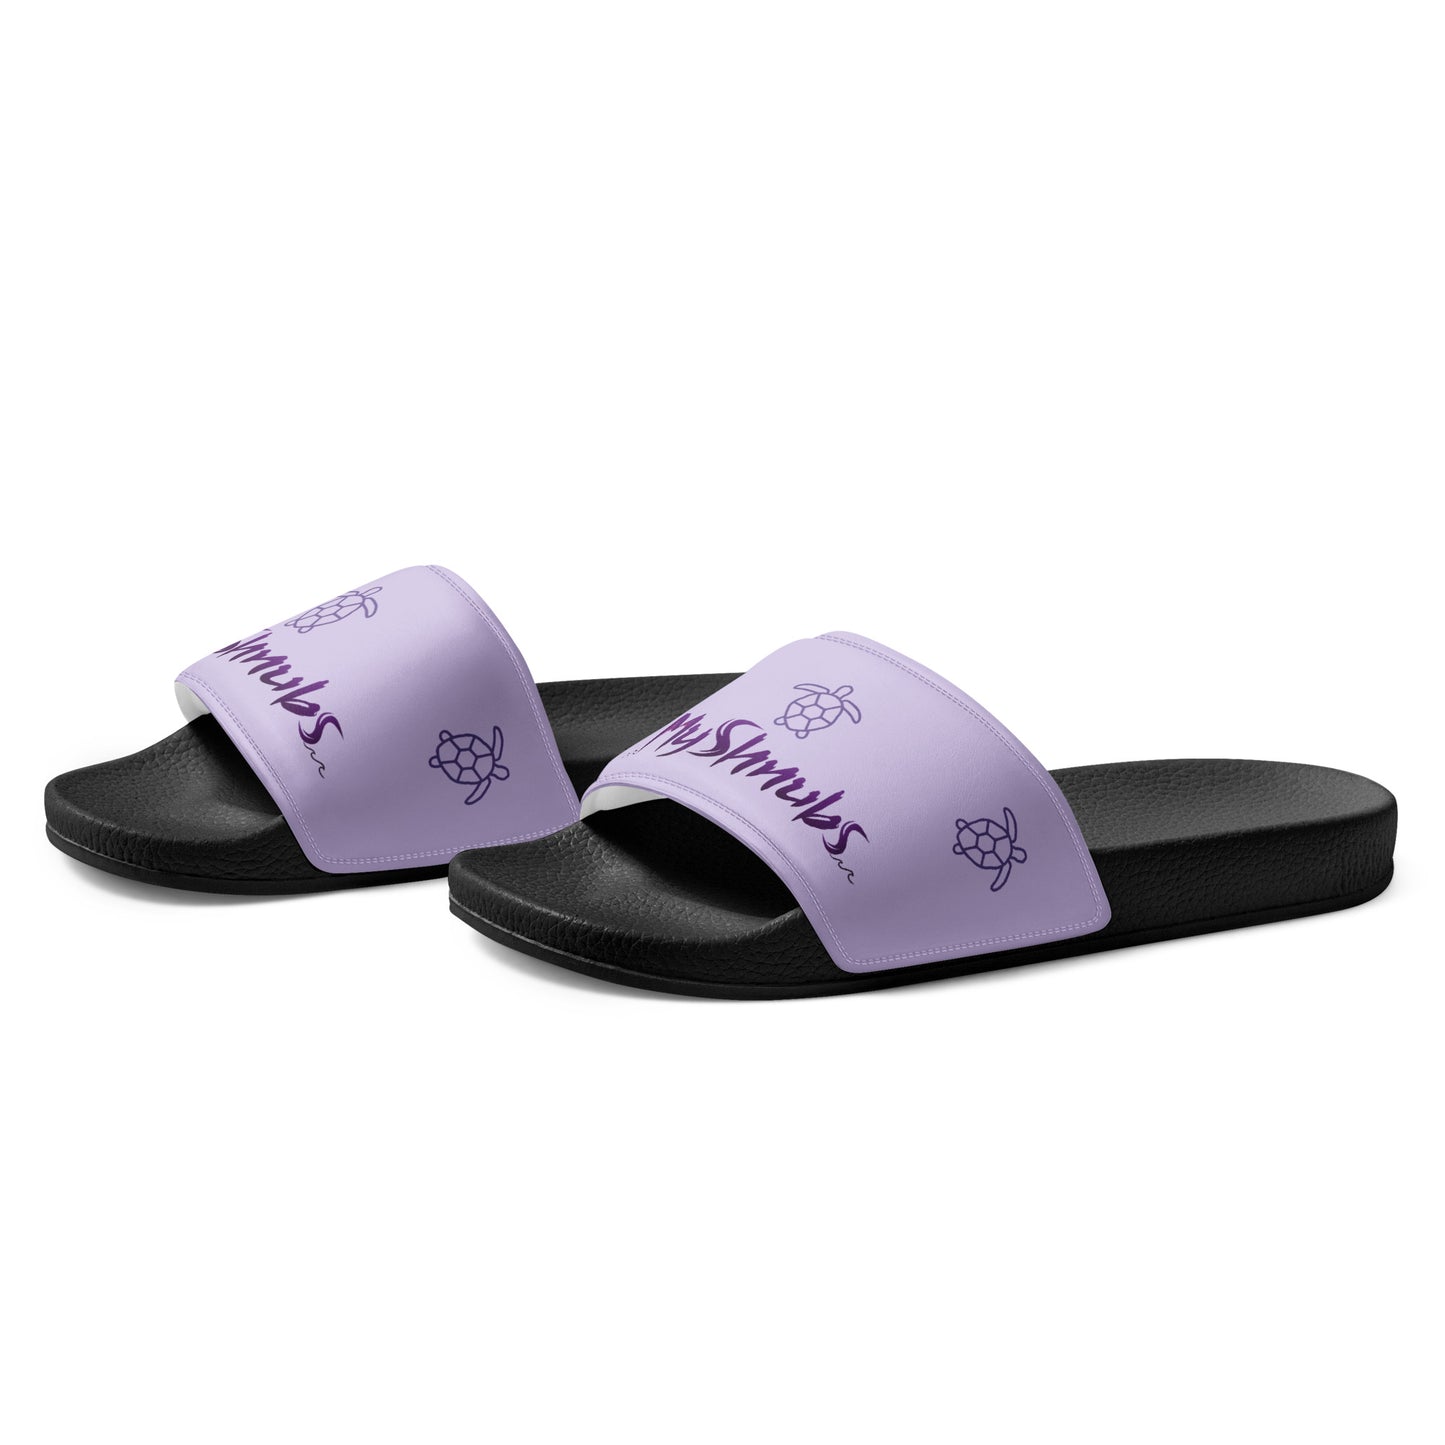 Shell Baby Women's Sliders (Purple)